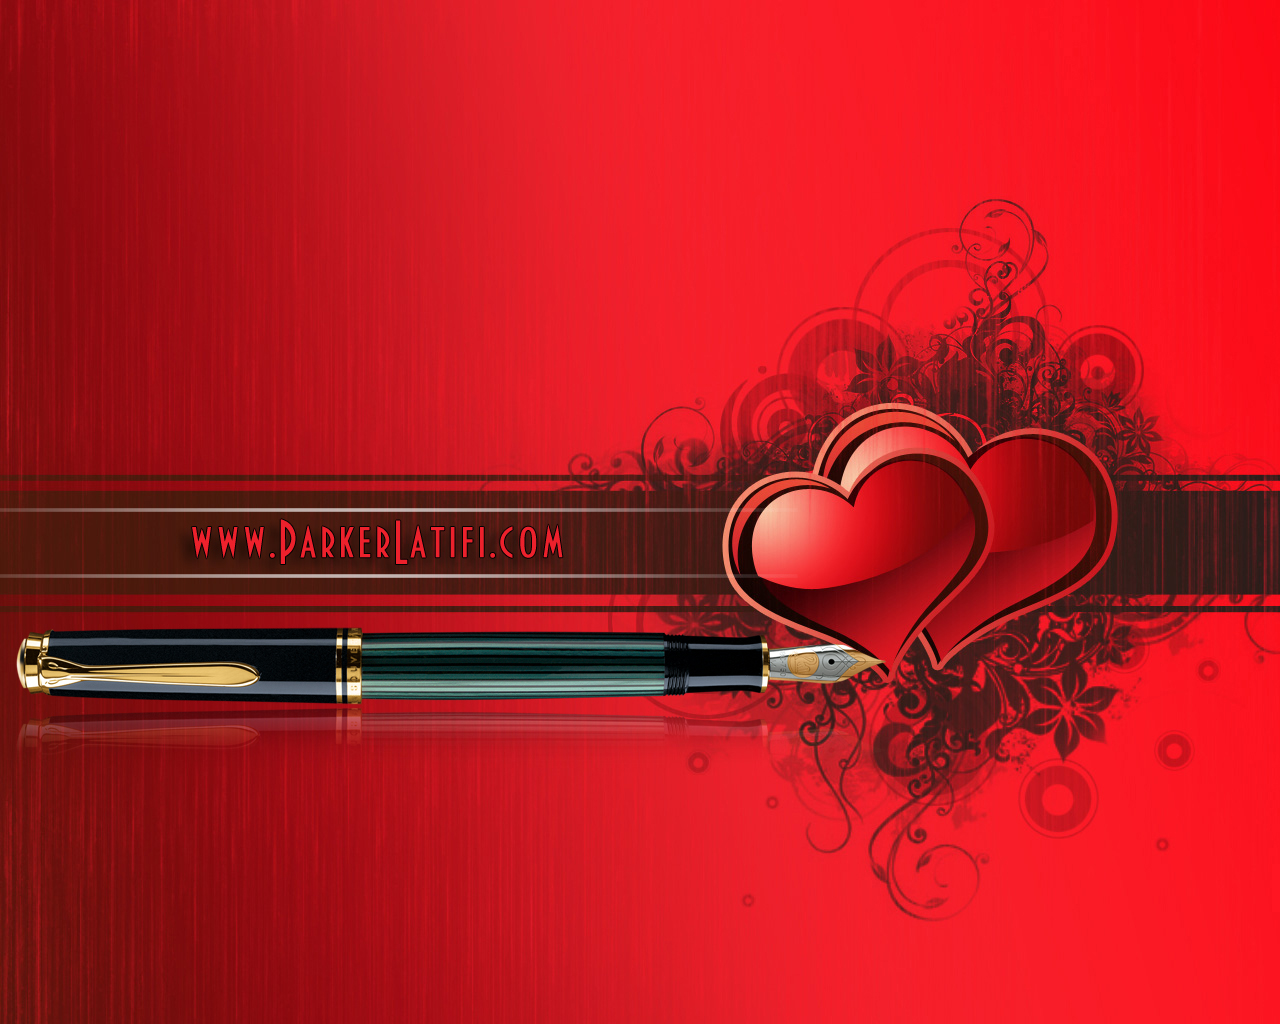 هدیه به کسانی که دوستشان داریم هدیه روز عشق خودنویس و خودکار در روز ولنتاین